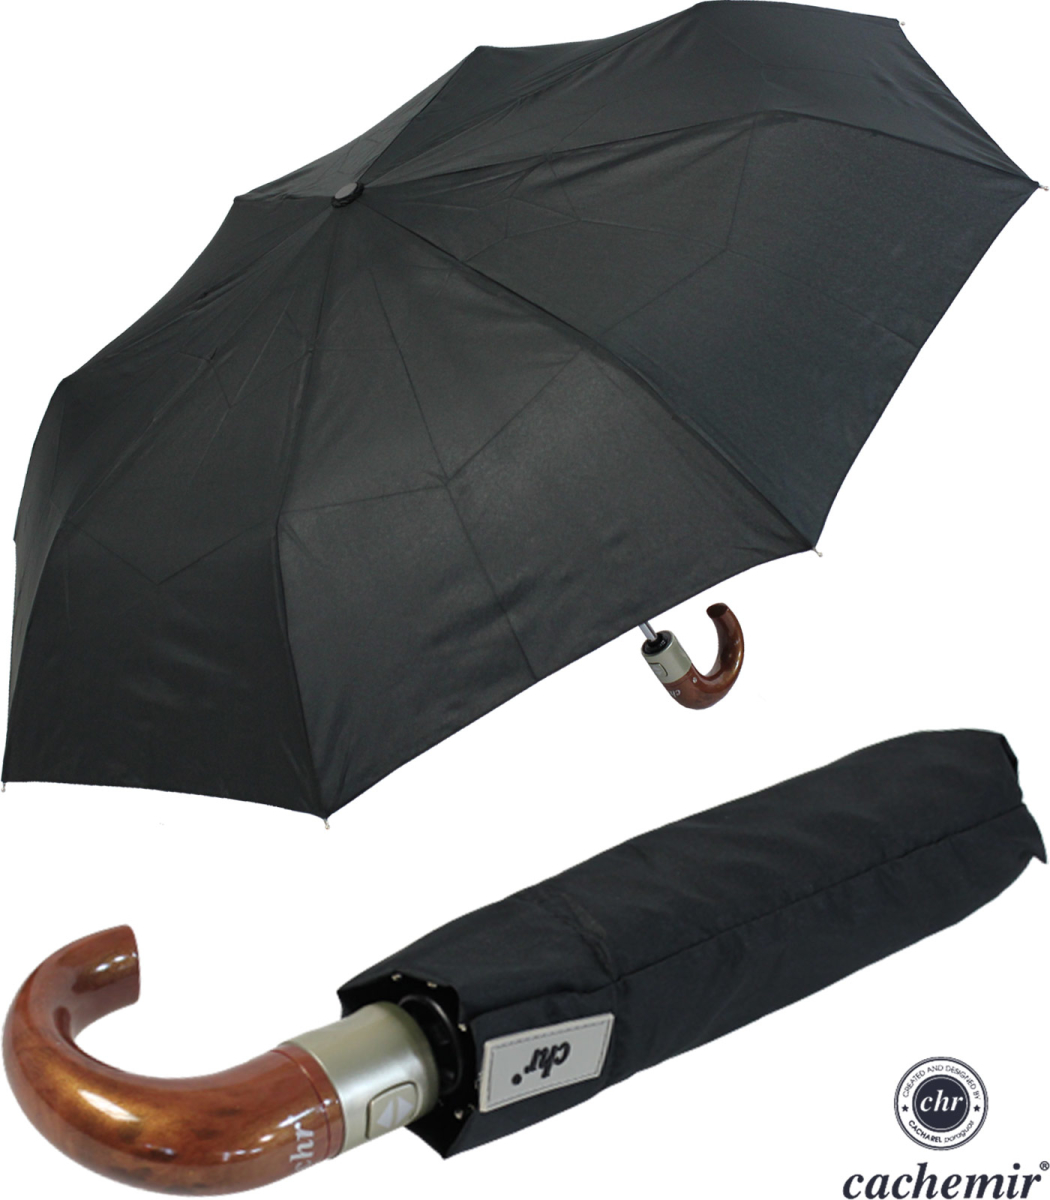 Cachemir Regenschirm Taschenschirm Automatik Rundhakengriff Holz Opti,  14,99 €